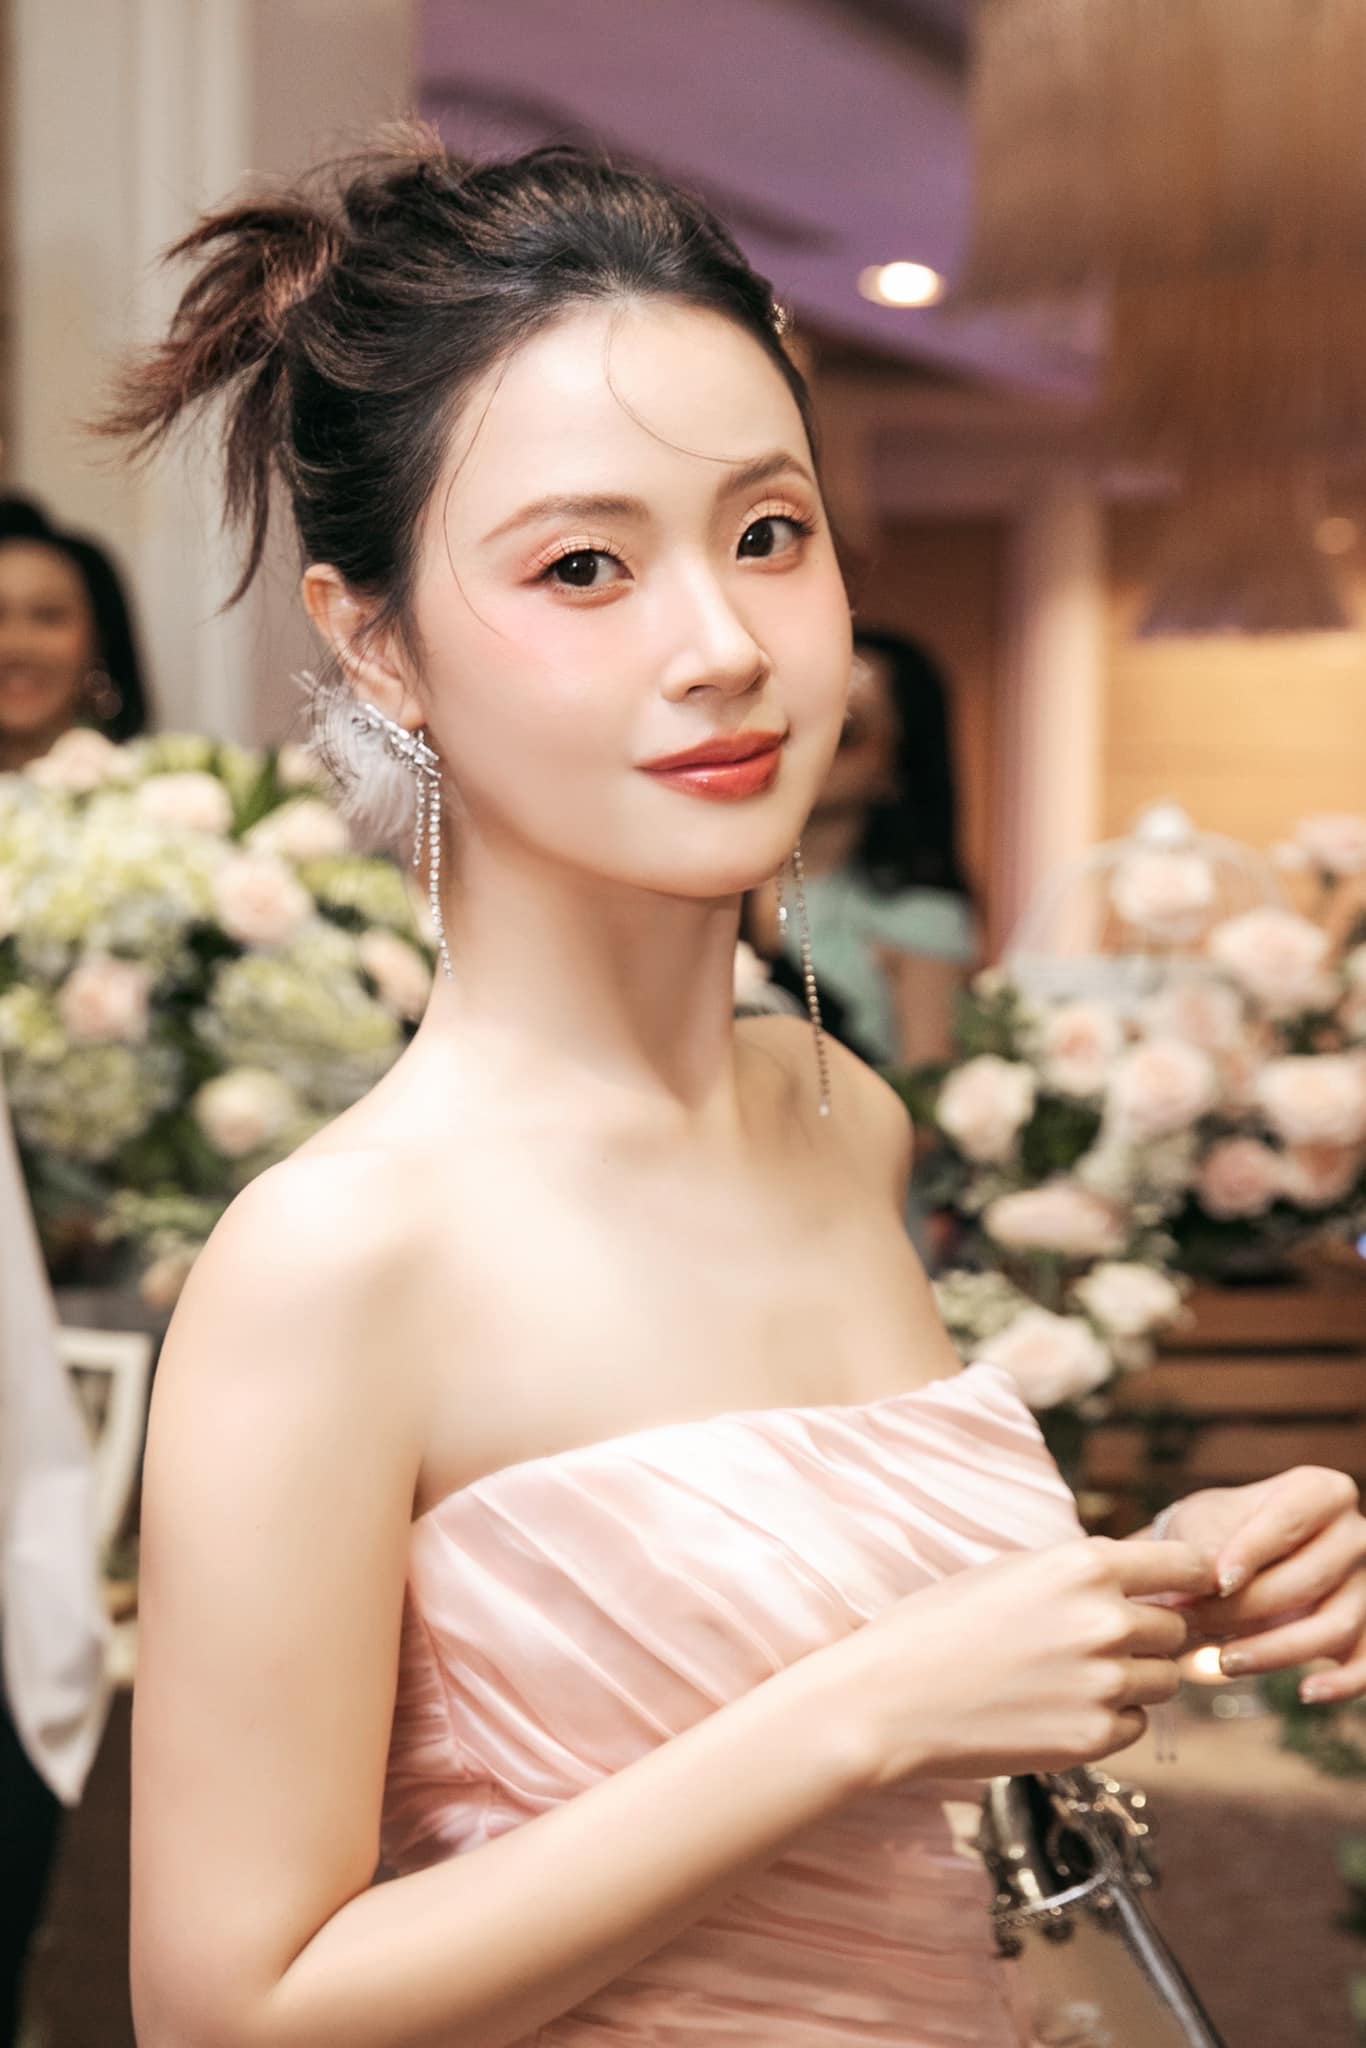 Midu tổ chức lễ cưới với chồng doanh nhân tại Đà Lạt, thời gian và quy định khách mời được hé lộ- Ảnh 1.